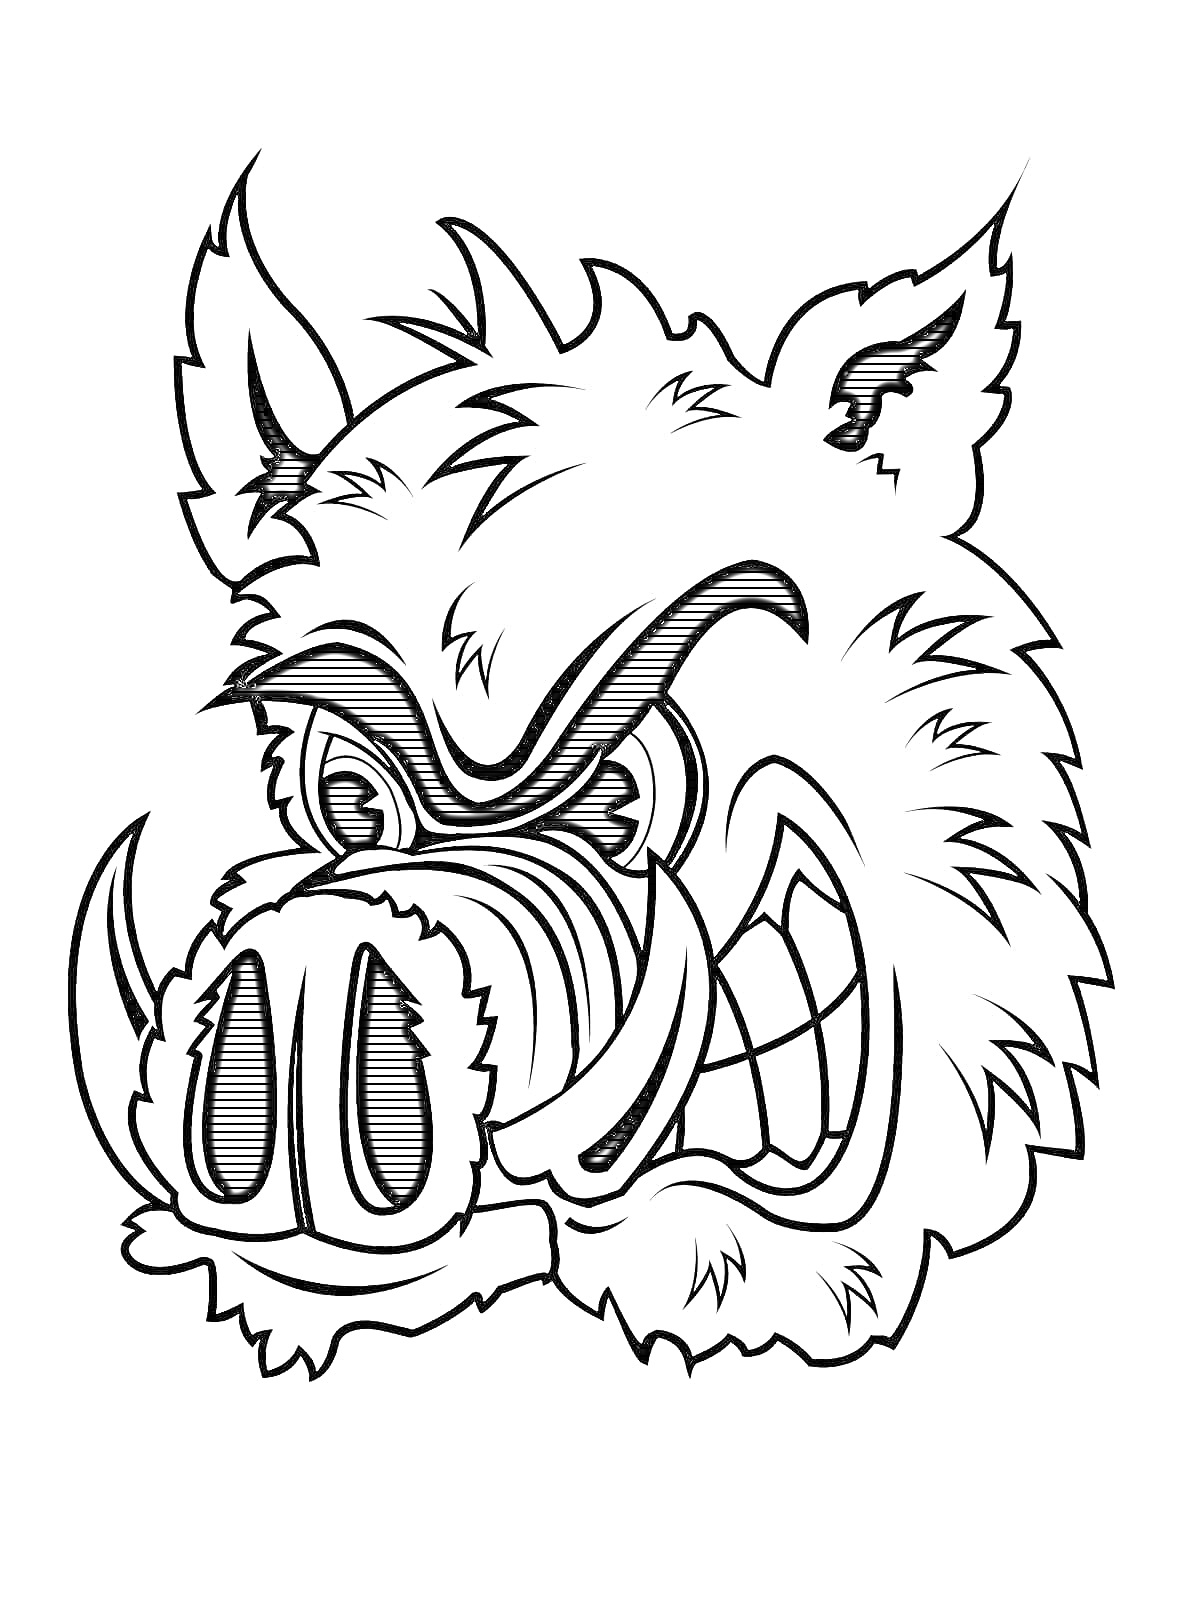 Раскраска Кабан в мультяшном стиле с острыми клыками и злыми глазами